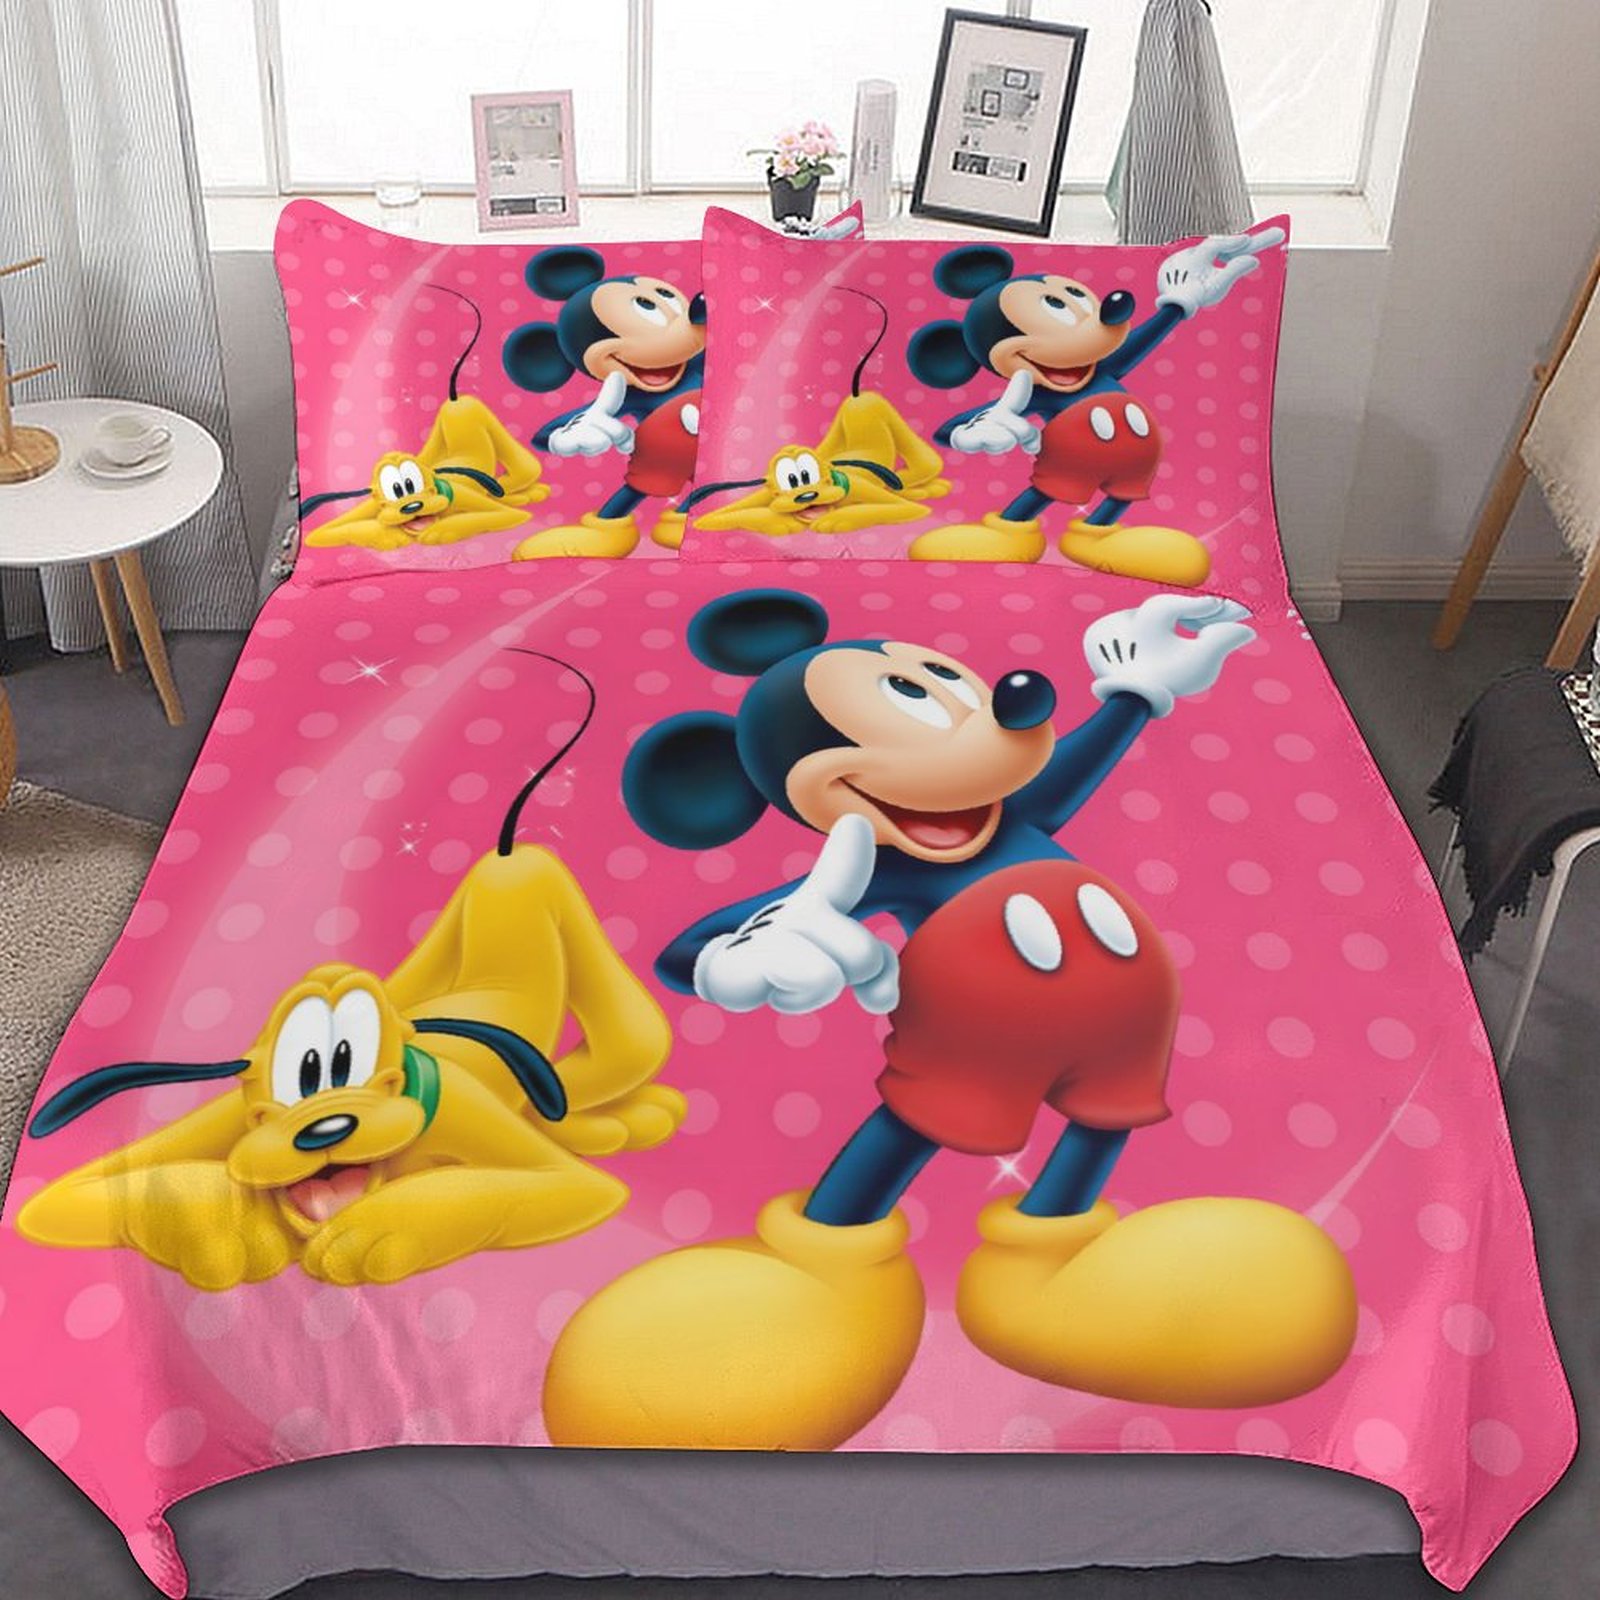 Disney-Juego de ropa de cama de Mickey y Minnie Mouse, ed...